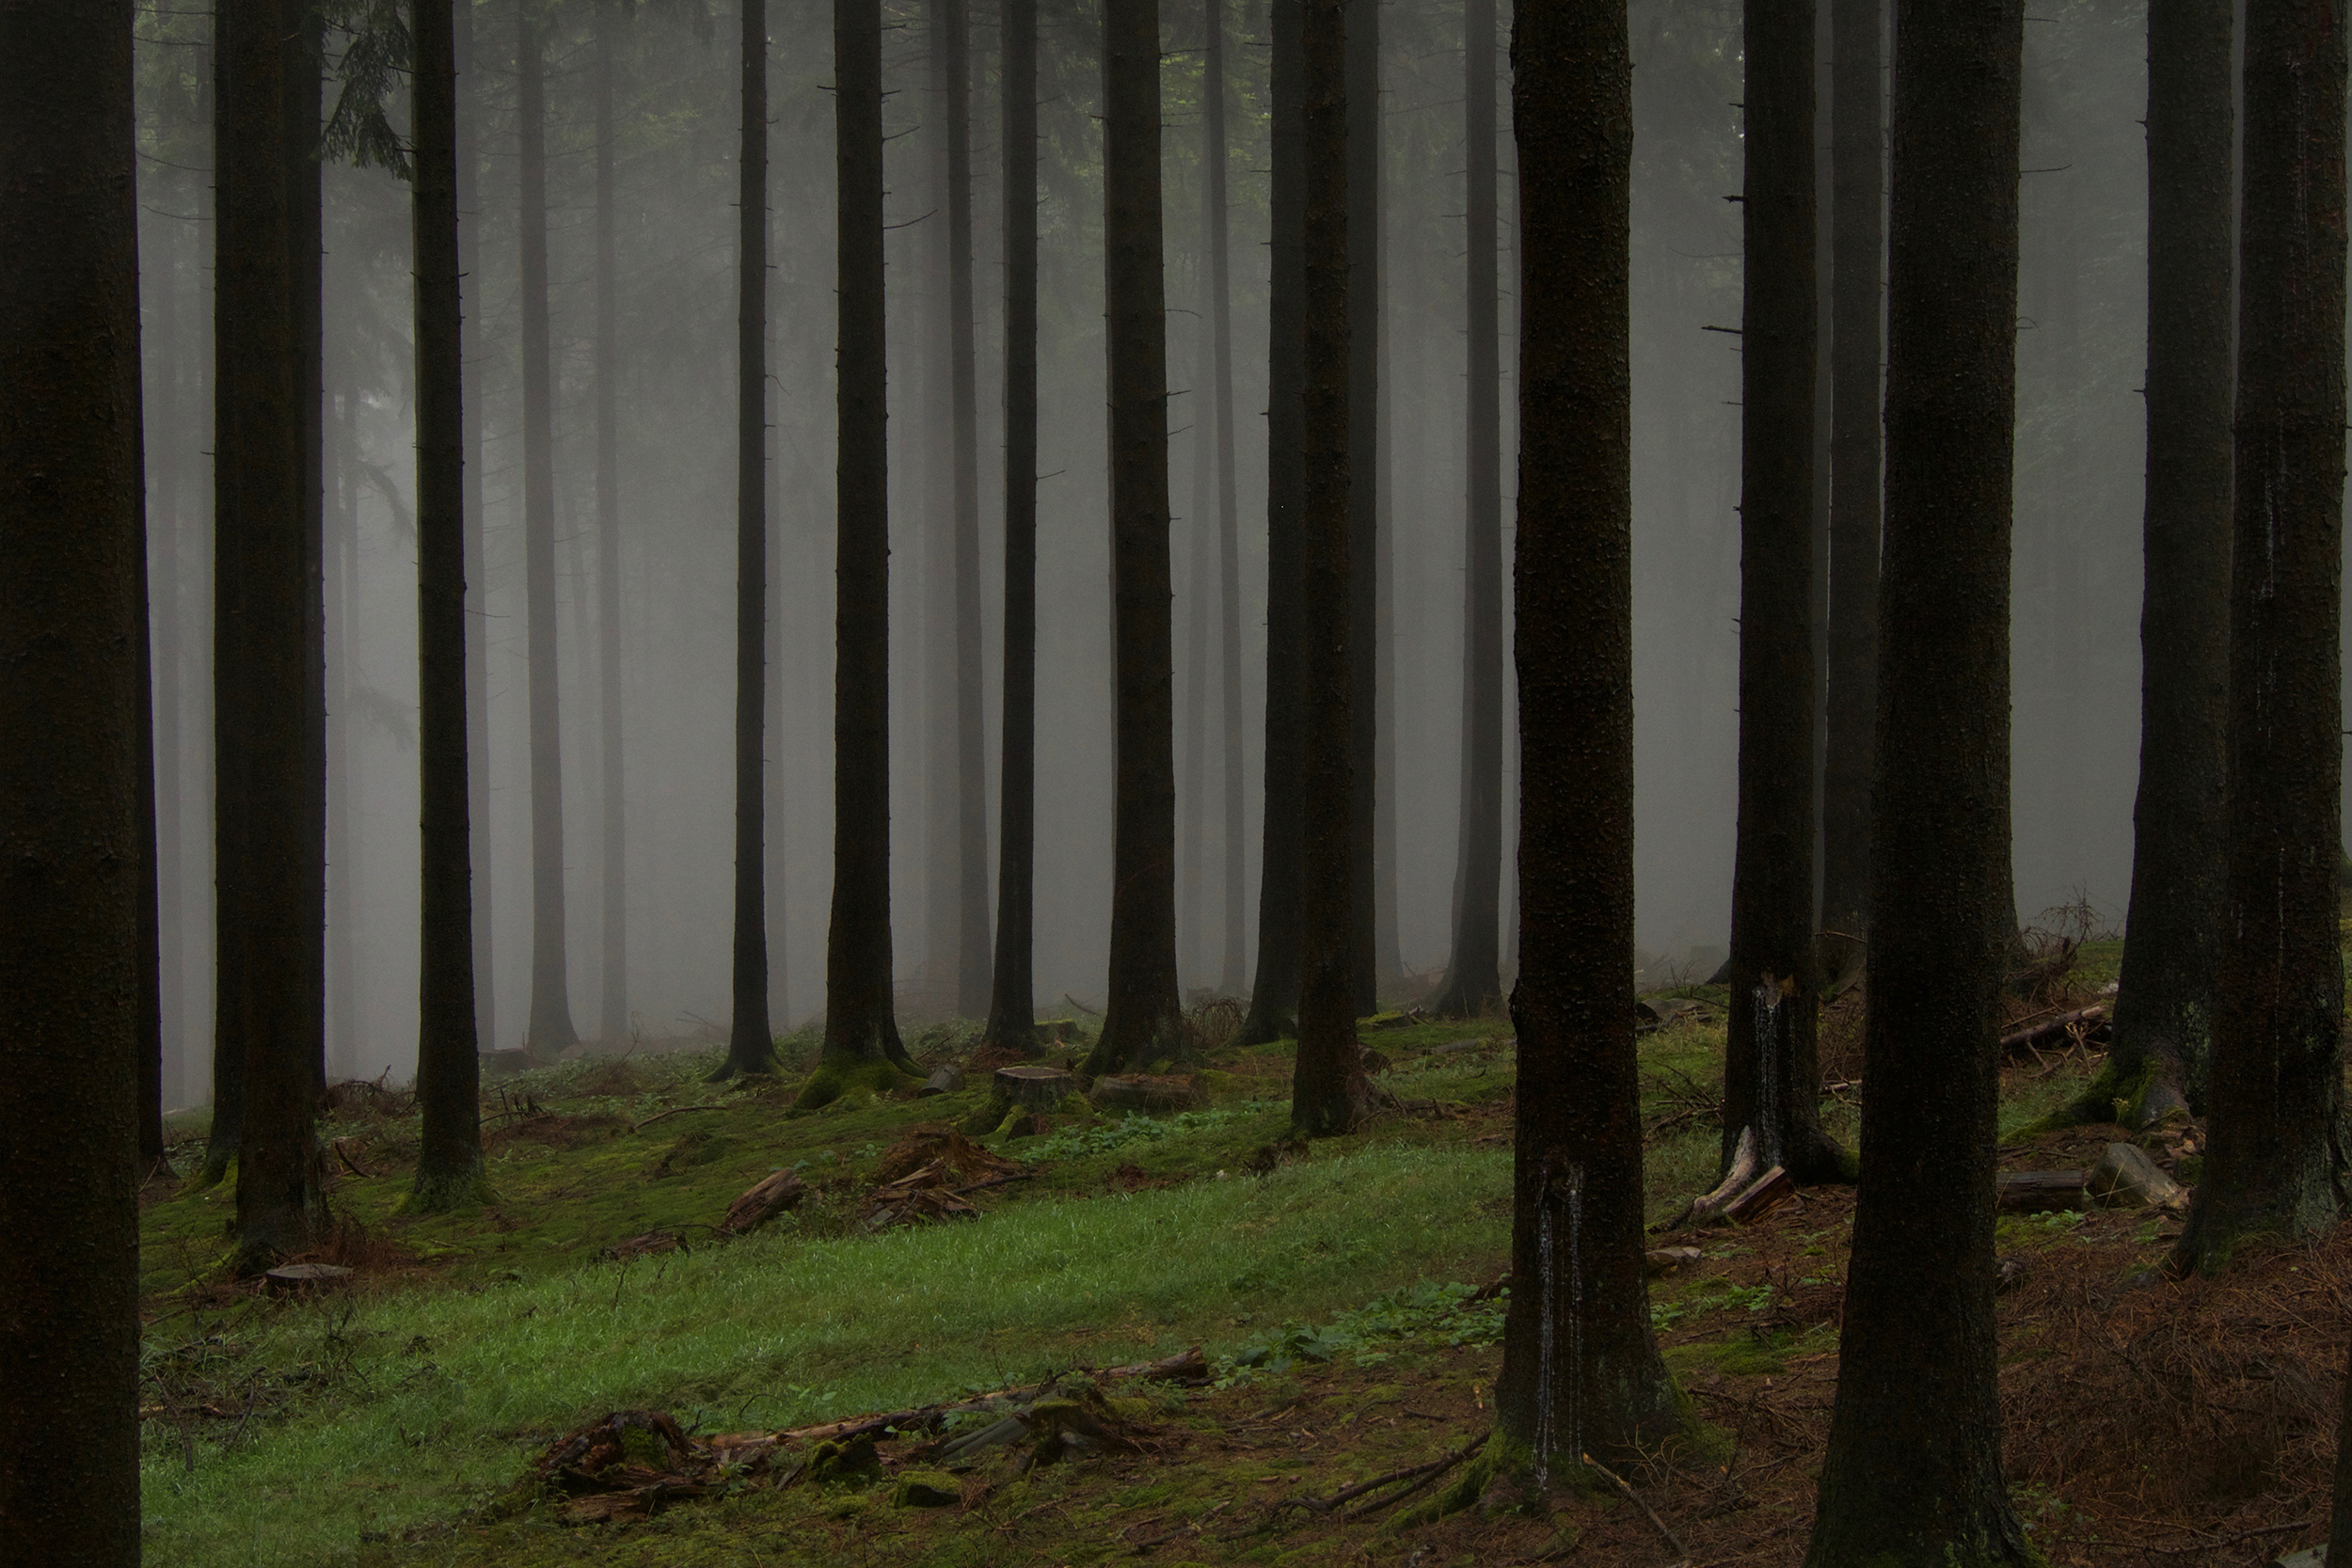 Fichtenwald (Picea abies). Nadelwälder werden häufig zur Holzproduktion genutzt und haben eine niedrige strukturelle Hererogenität (vertikal und horizontal).  © Springer Nature, Bild: Peter Manning